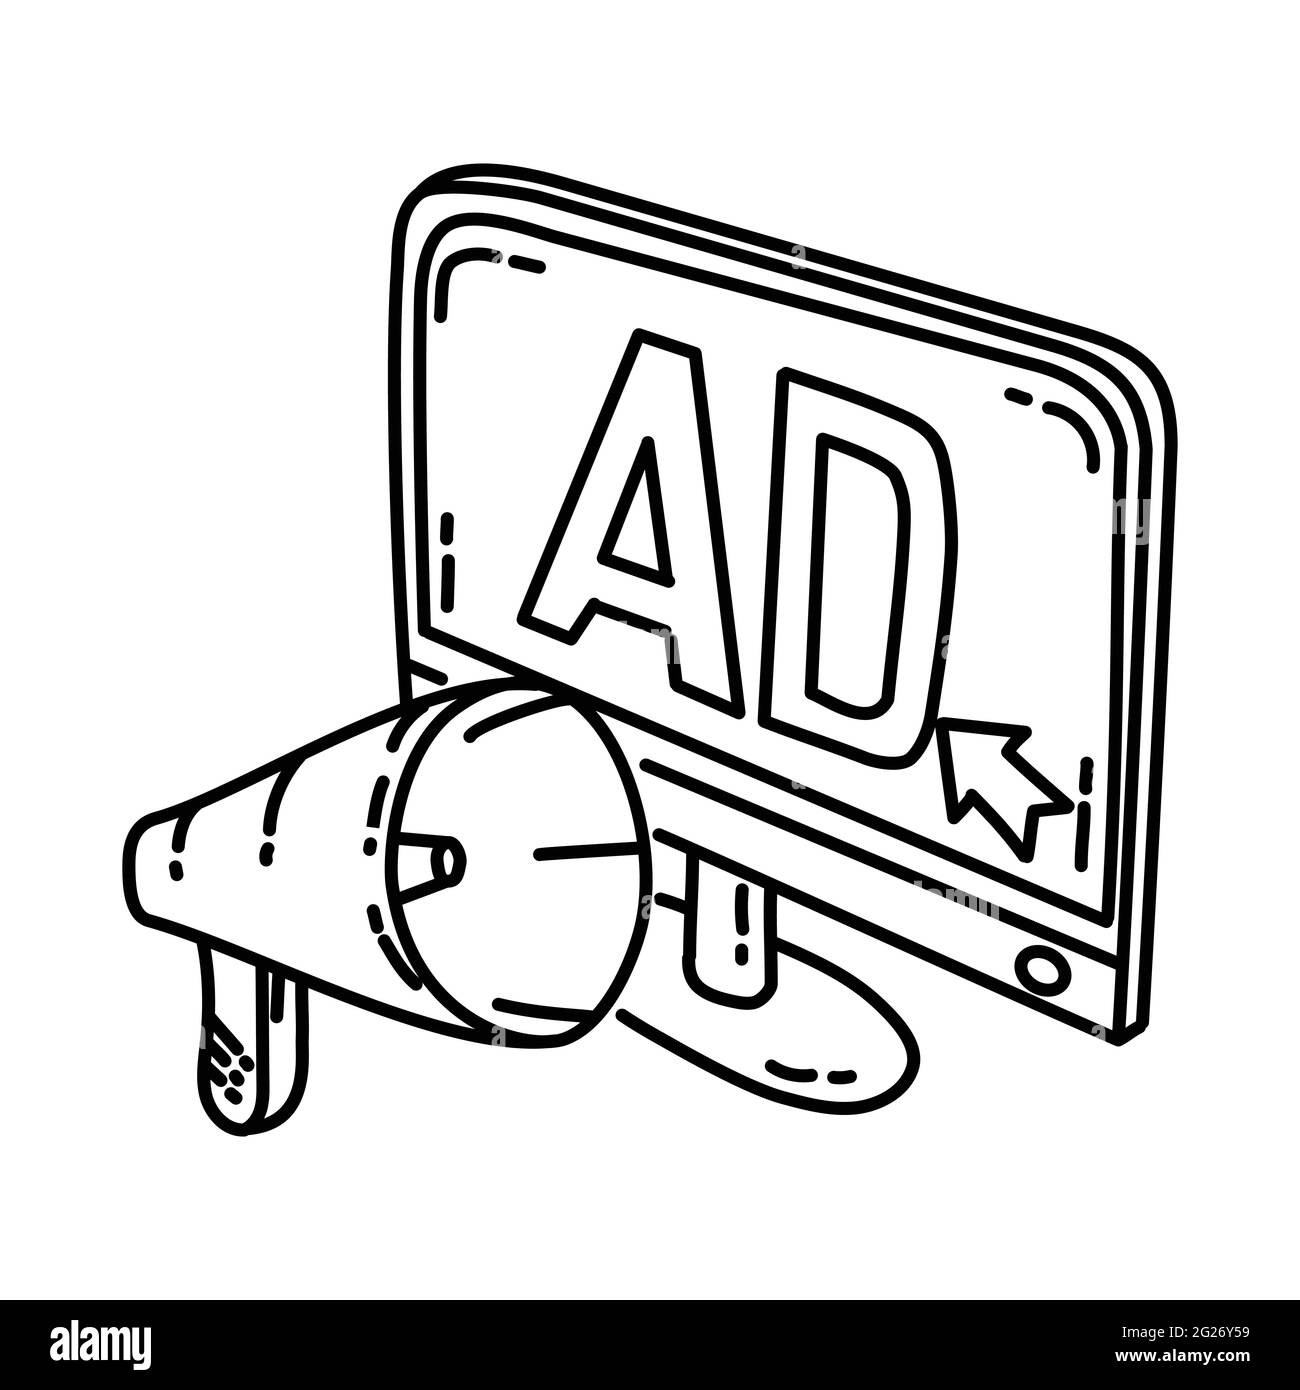 La publicité fait partie des activités de radiodiffusion jeu d'icônes vectorielles dessinées à la main. Illustration de Vecteur